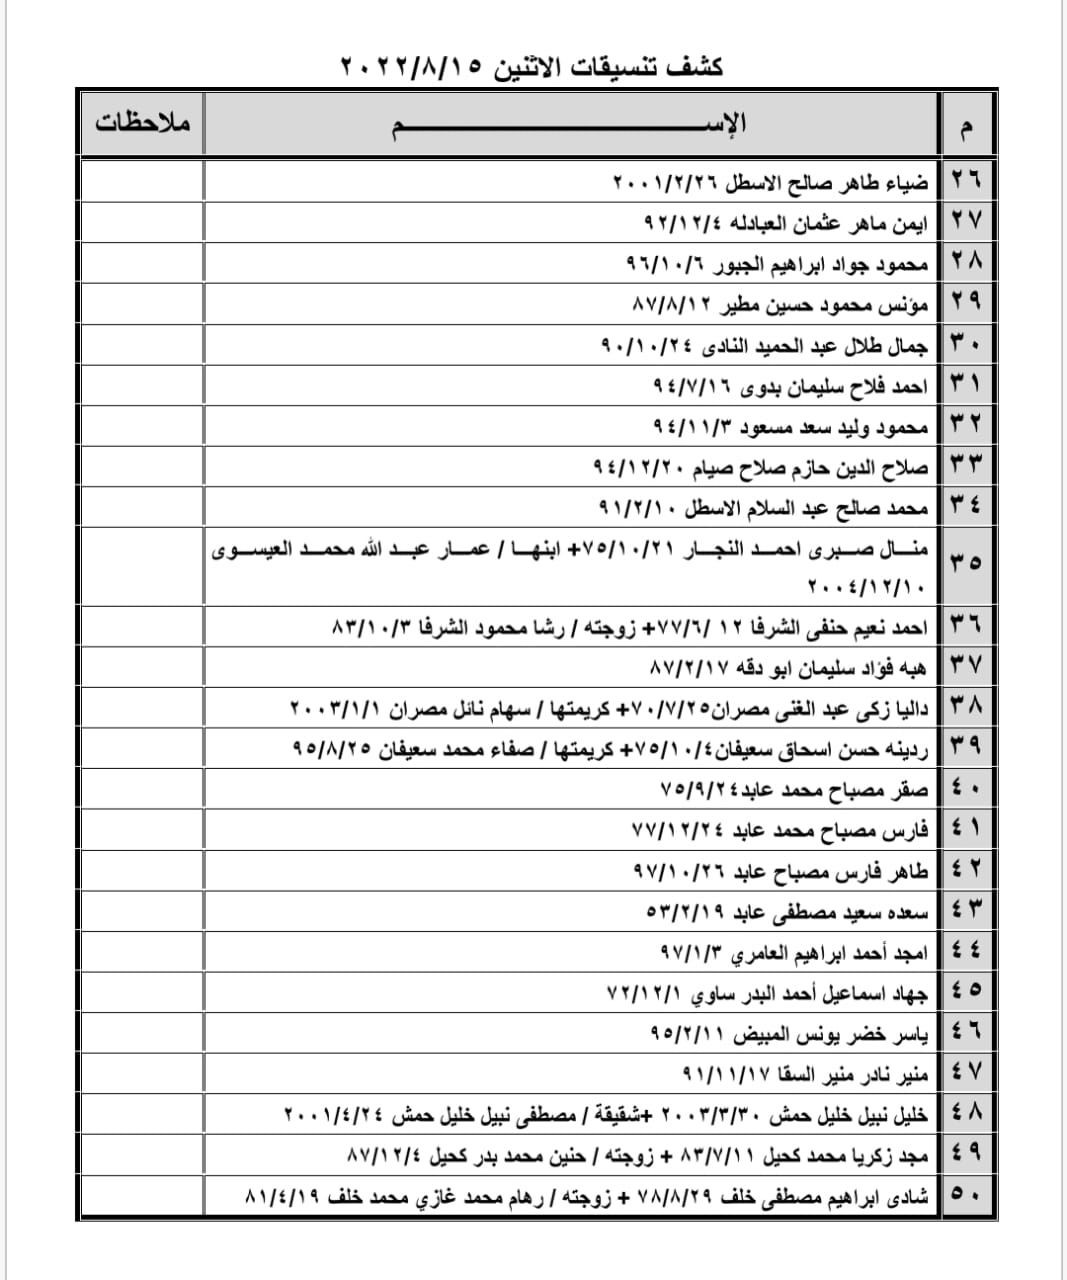 بالأسماء: داخلية غزّة تنشر كشف "التنسيقات المصرية" ليوم الإثنين 15 أغسطس 2022